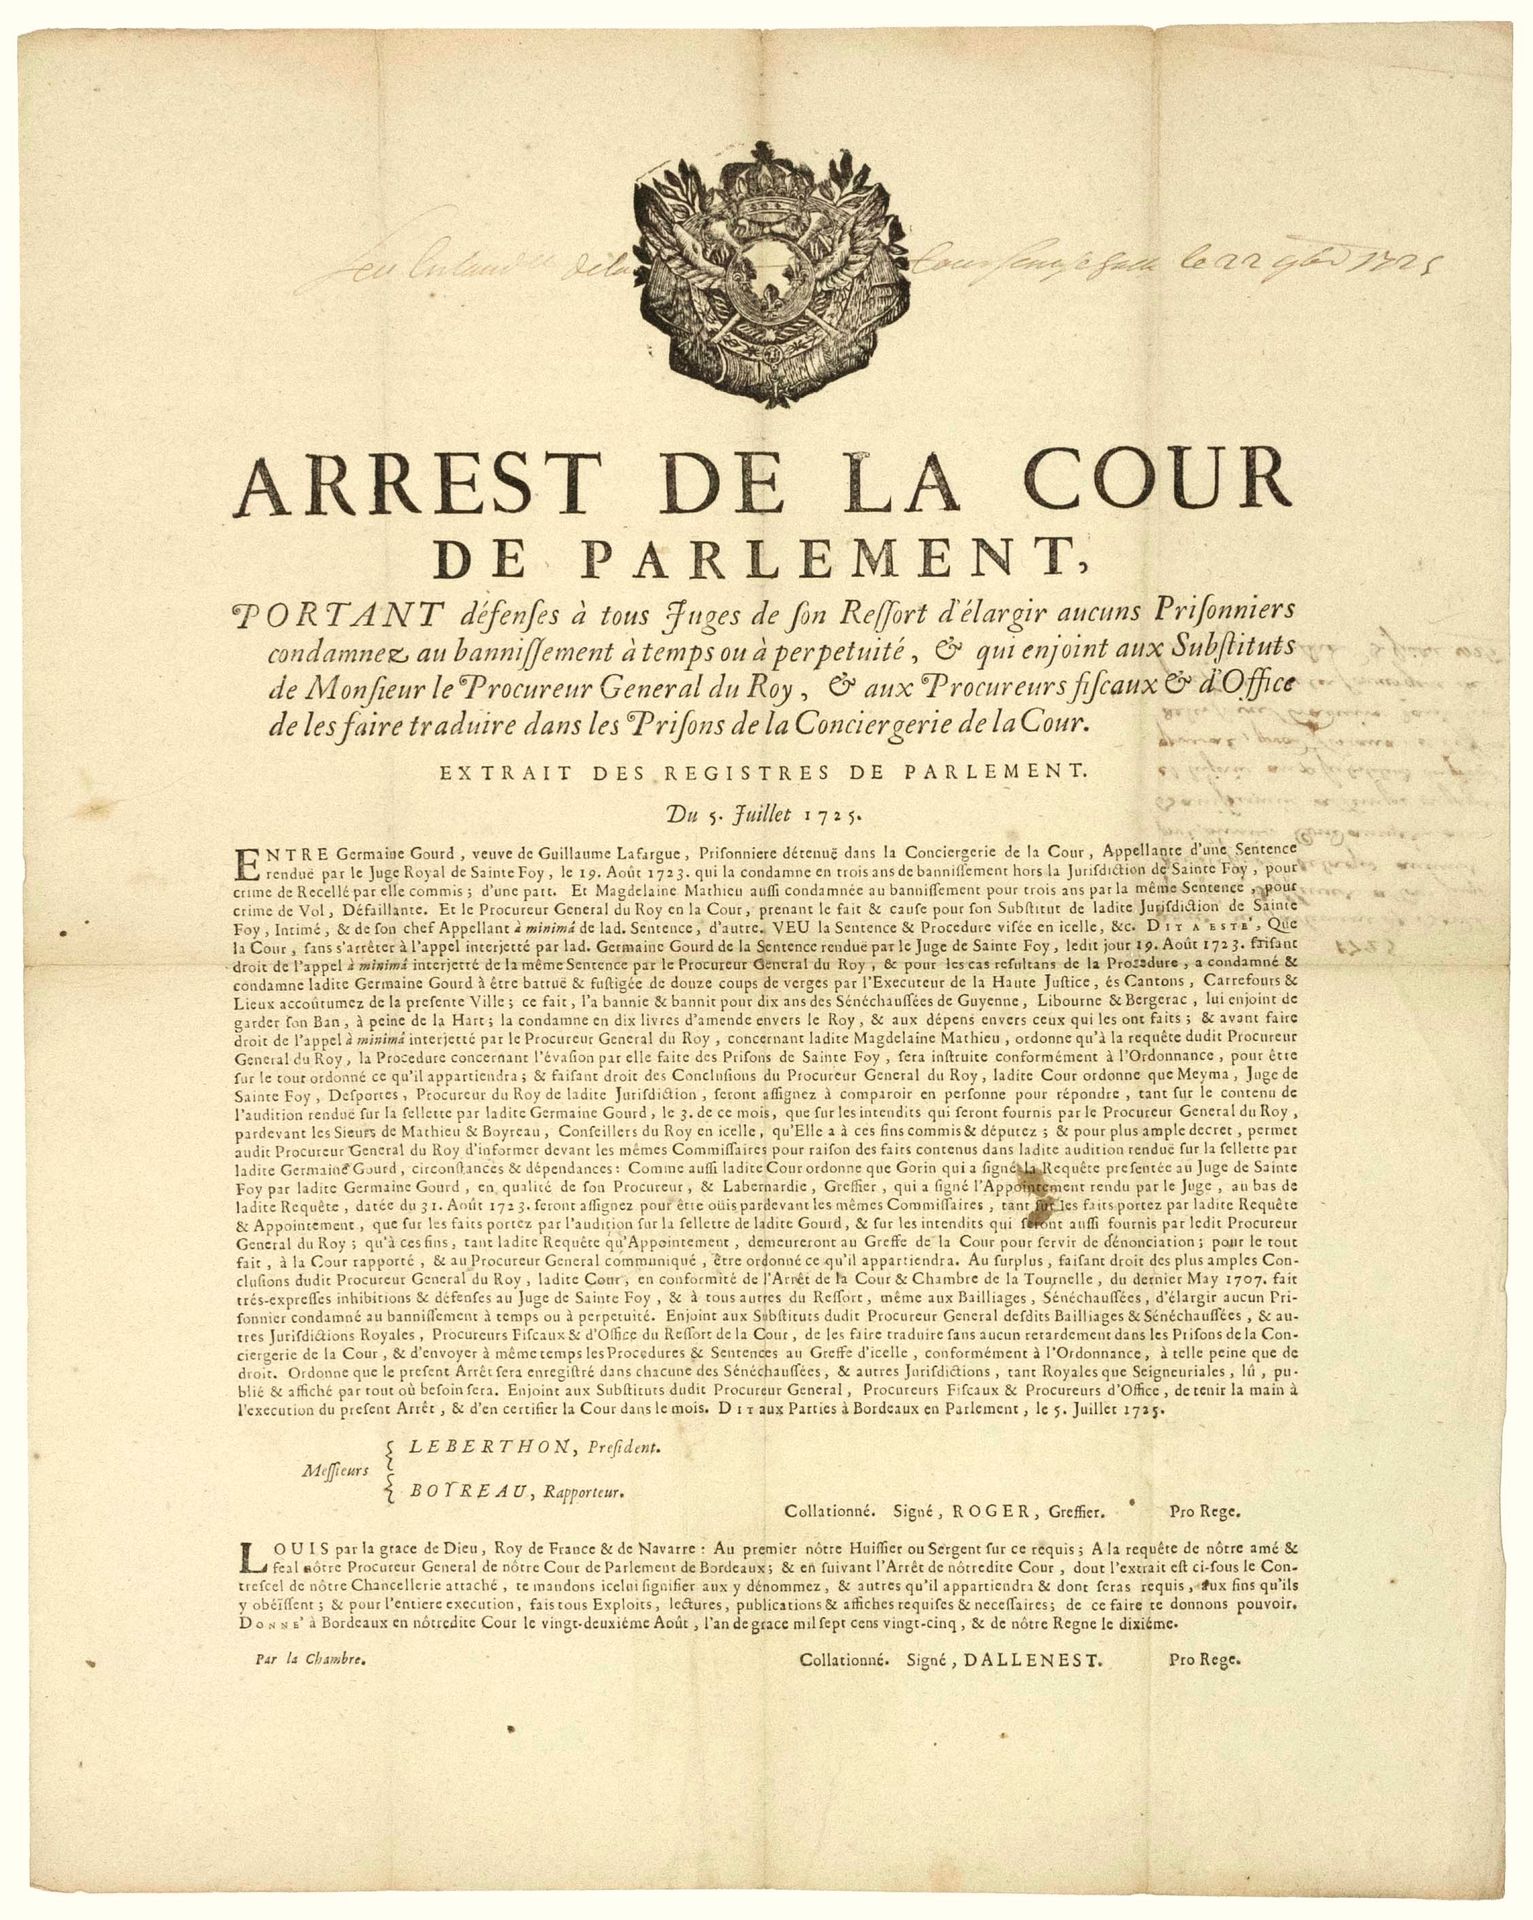 Null GIRONDE。1725.圣弗伊的监狱。BORDEAUX的议会。1725年7月5日的 "议会法院逮捕令，禁止其管辖范围内的所有法官释放（释放）任何被判&hellip;